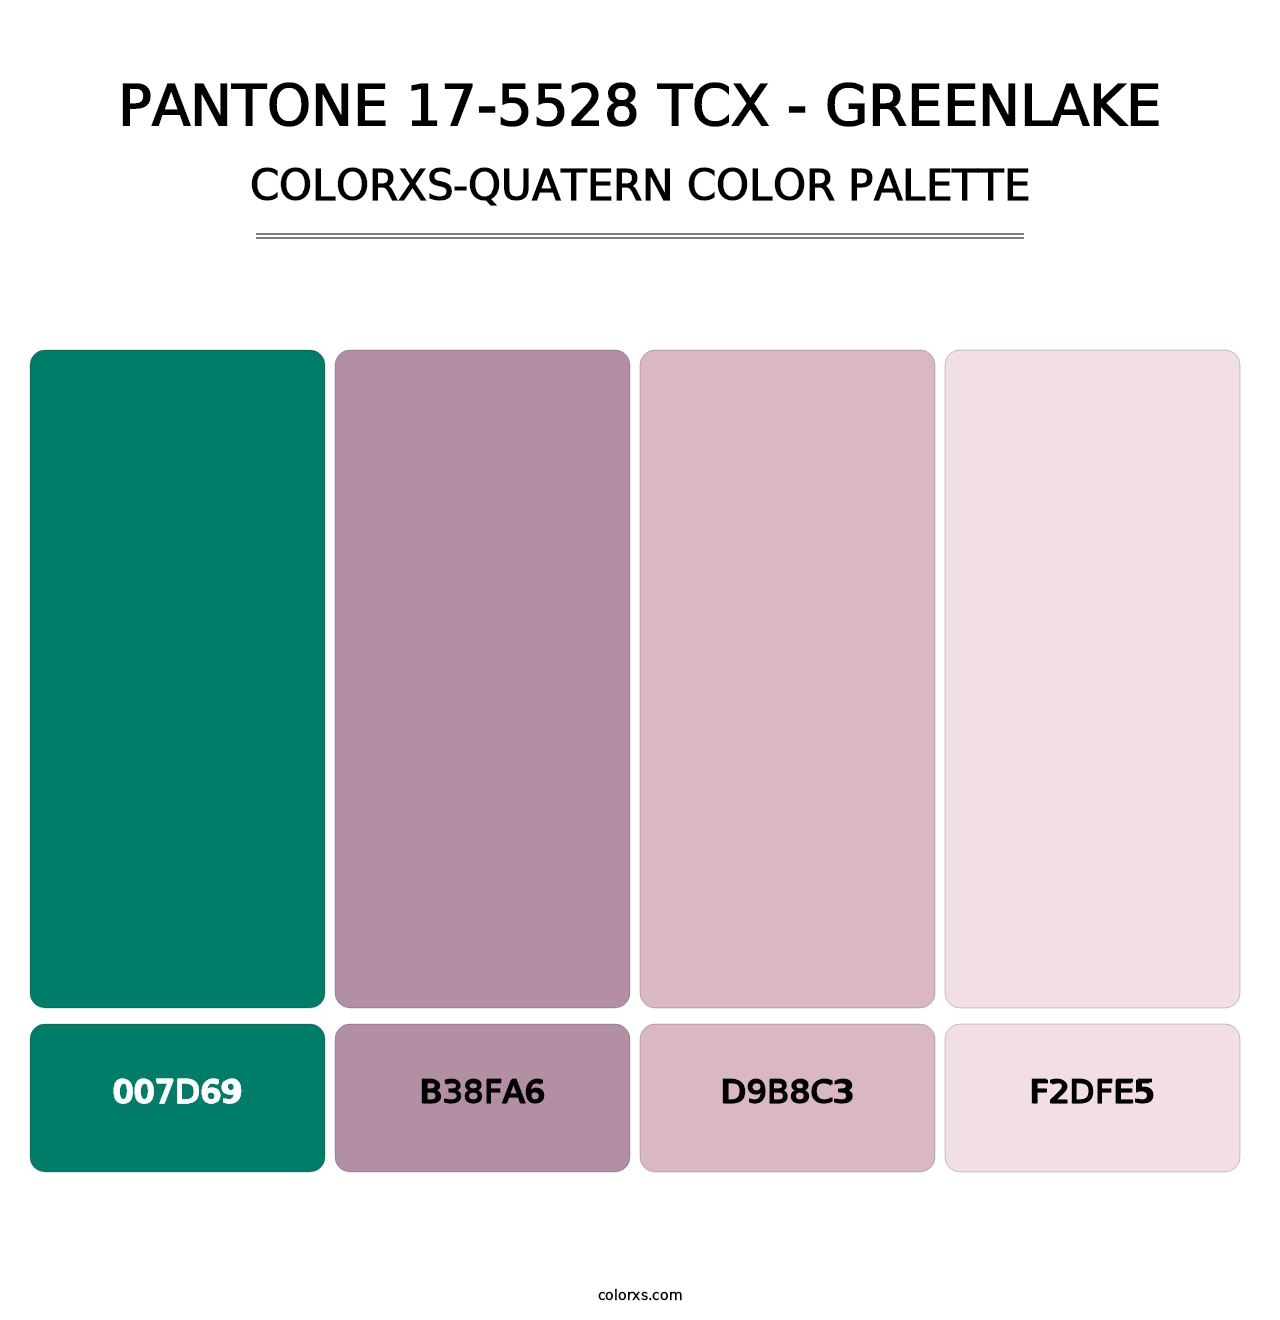 PANTONE 17-5528 TCX - Greenlake - Colorxs Quatern Palette